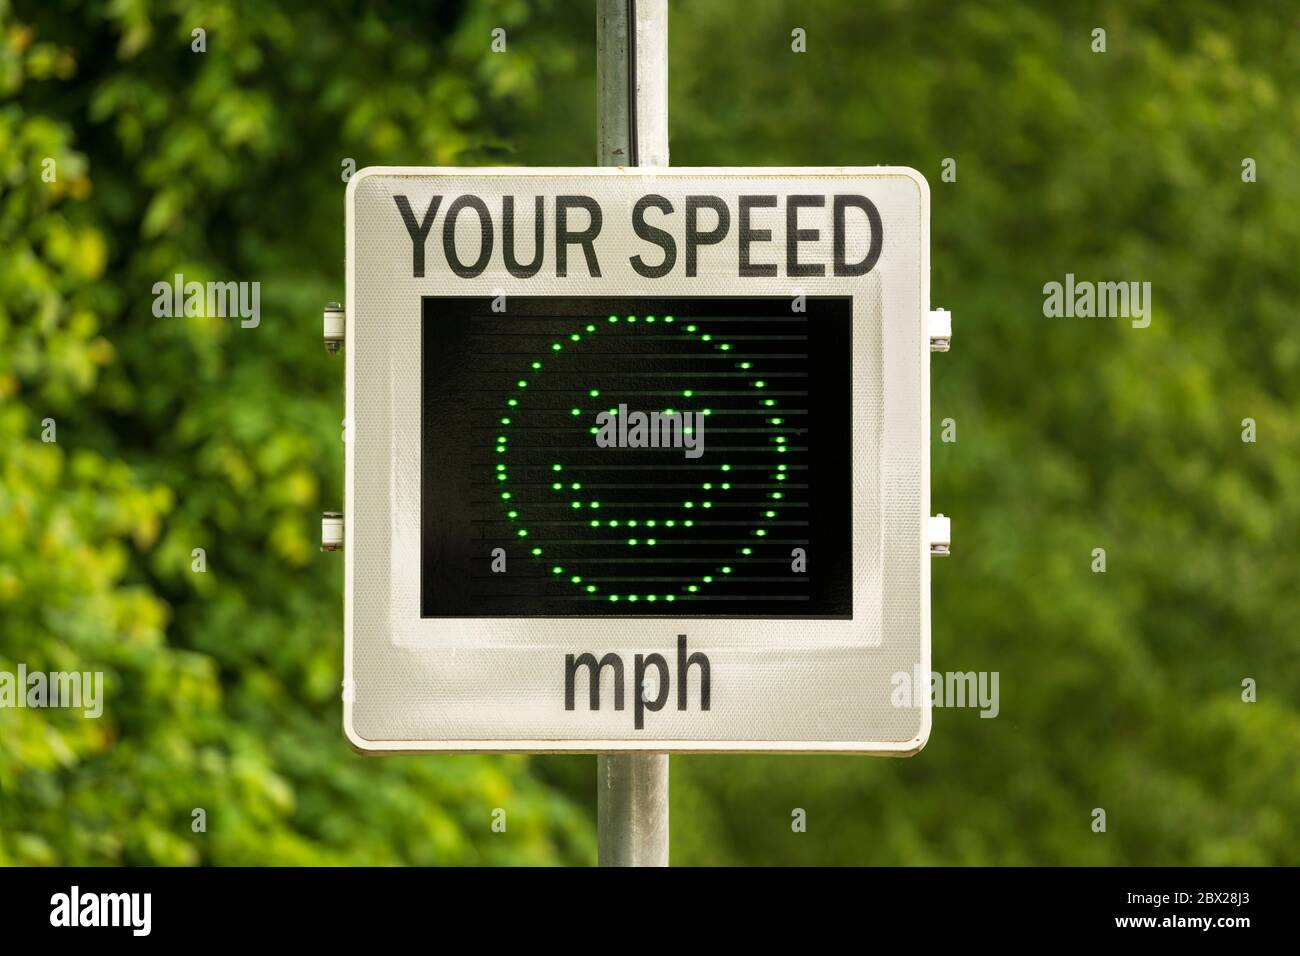 Indicateur de vitesse (SID) qui mesure et affiche la vitesse des voitures en approche. ROYAUME-UNI. Autres variantes d'écran disponibles dans mon portefeuille. Banque D'Images